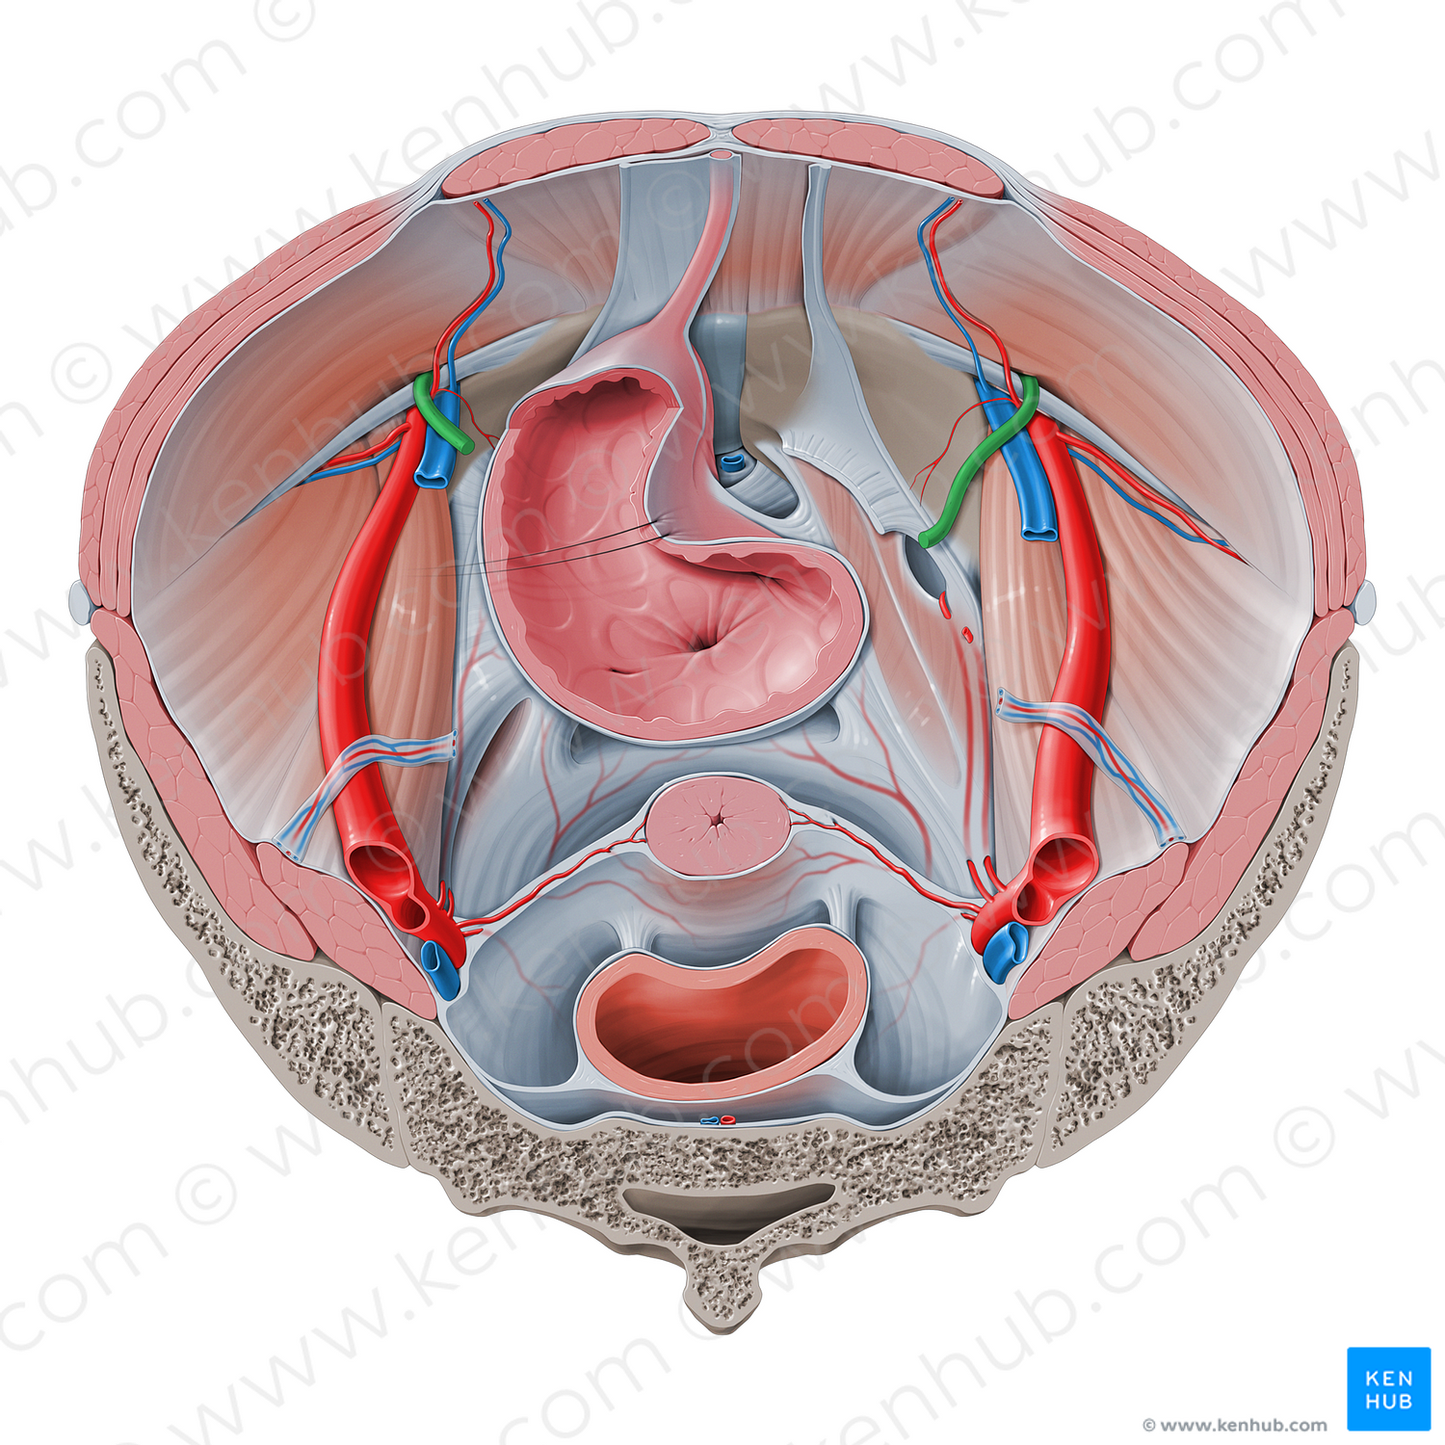 Round ligament of uterus (#4645)